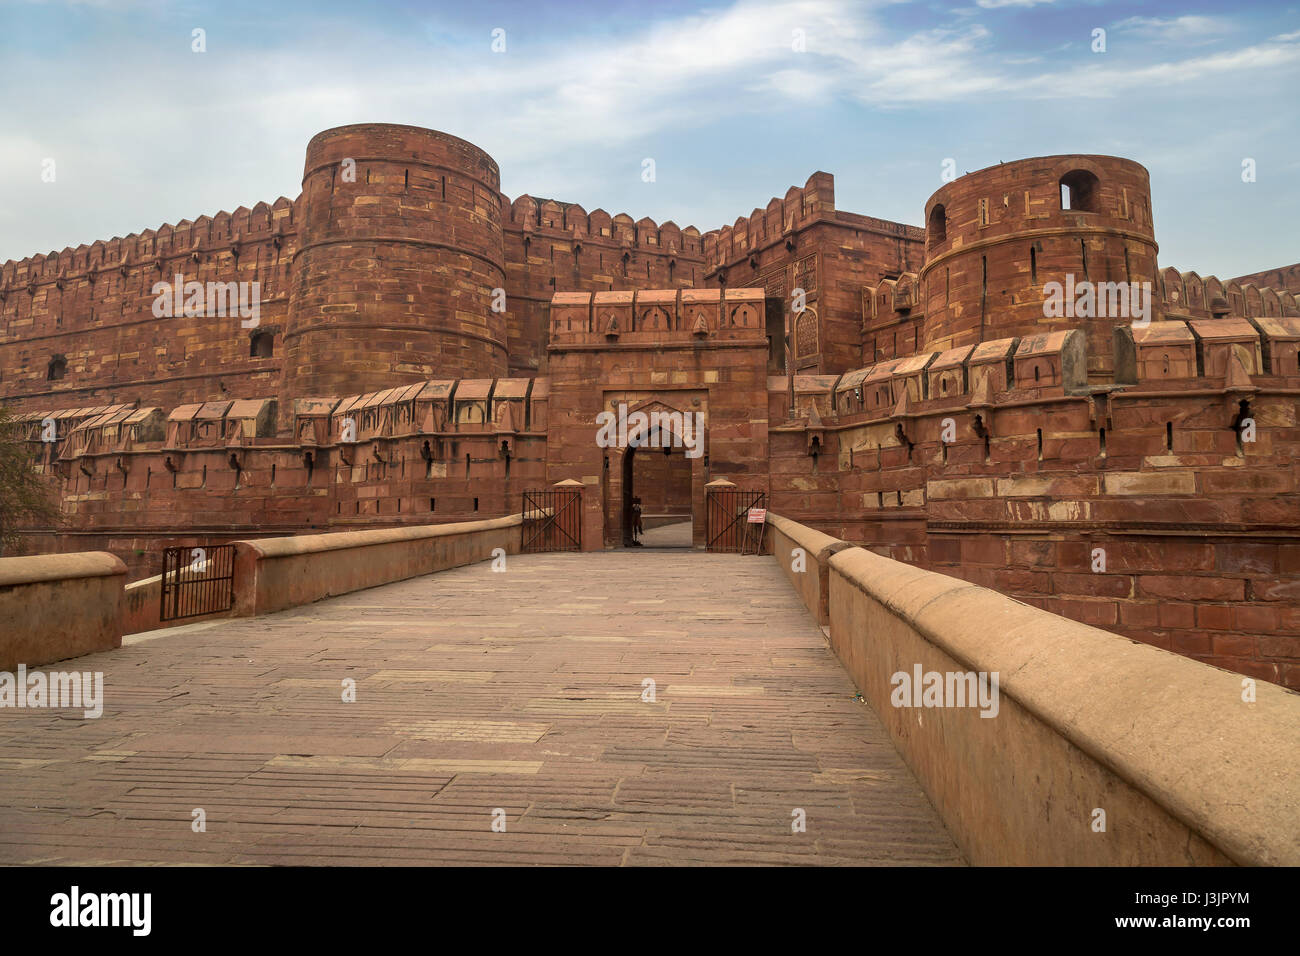 Agra fort - un sito patrimonio mondiale dell'unesco nella città di Agra india. Questa storica pietra arenaria rossa fort è un marchio di mughal architettura indiana. Foto Stock